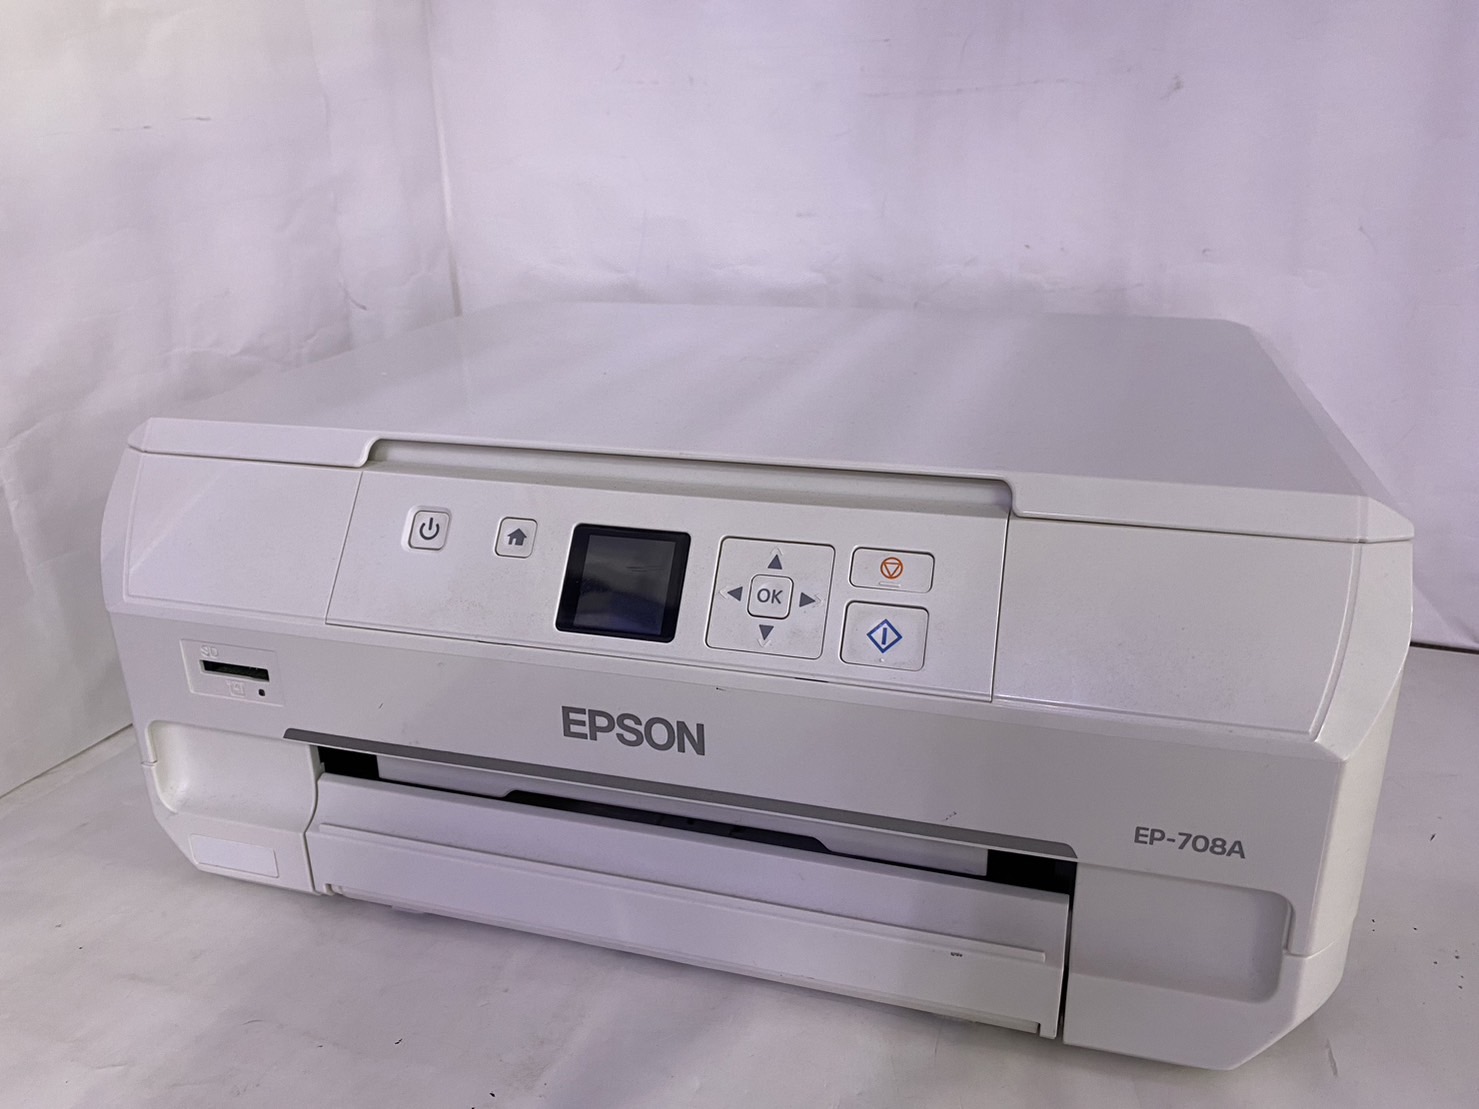 EPSON(エプソン) カラリオ EP-708Aの激安通販 - パソコンショップパウ